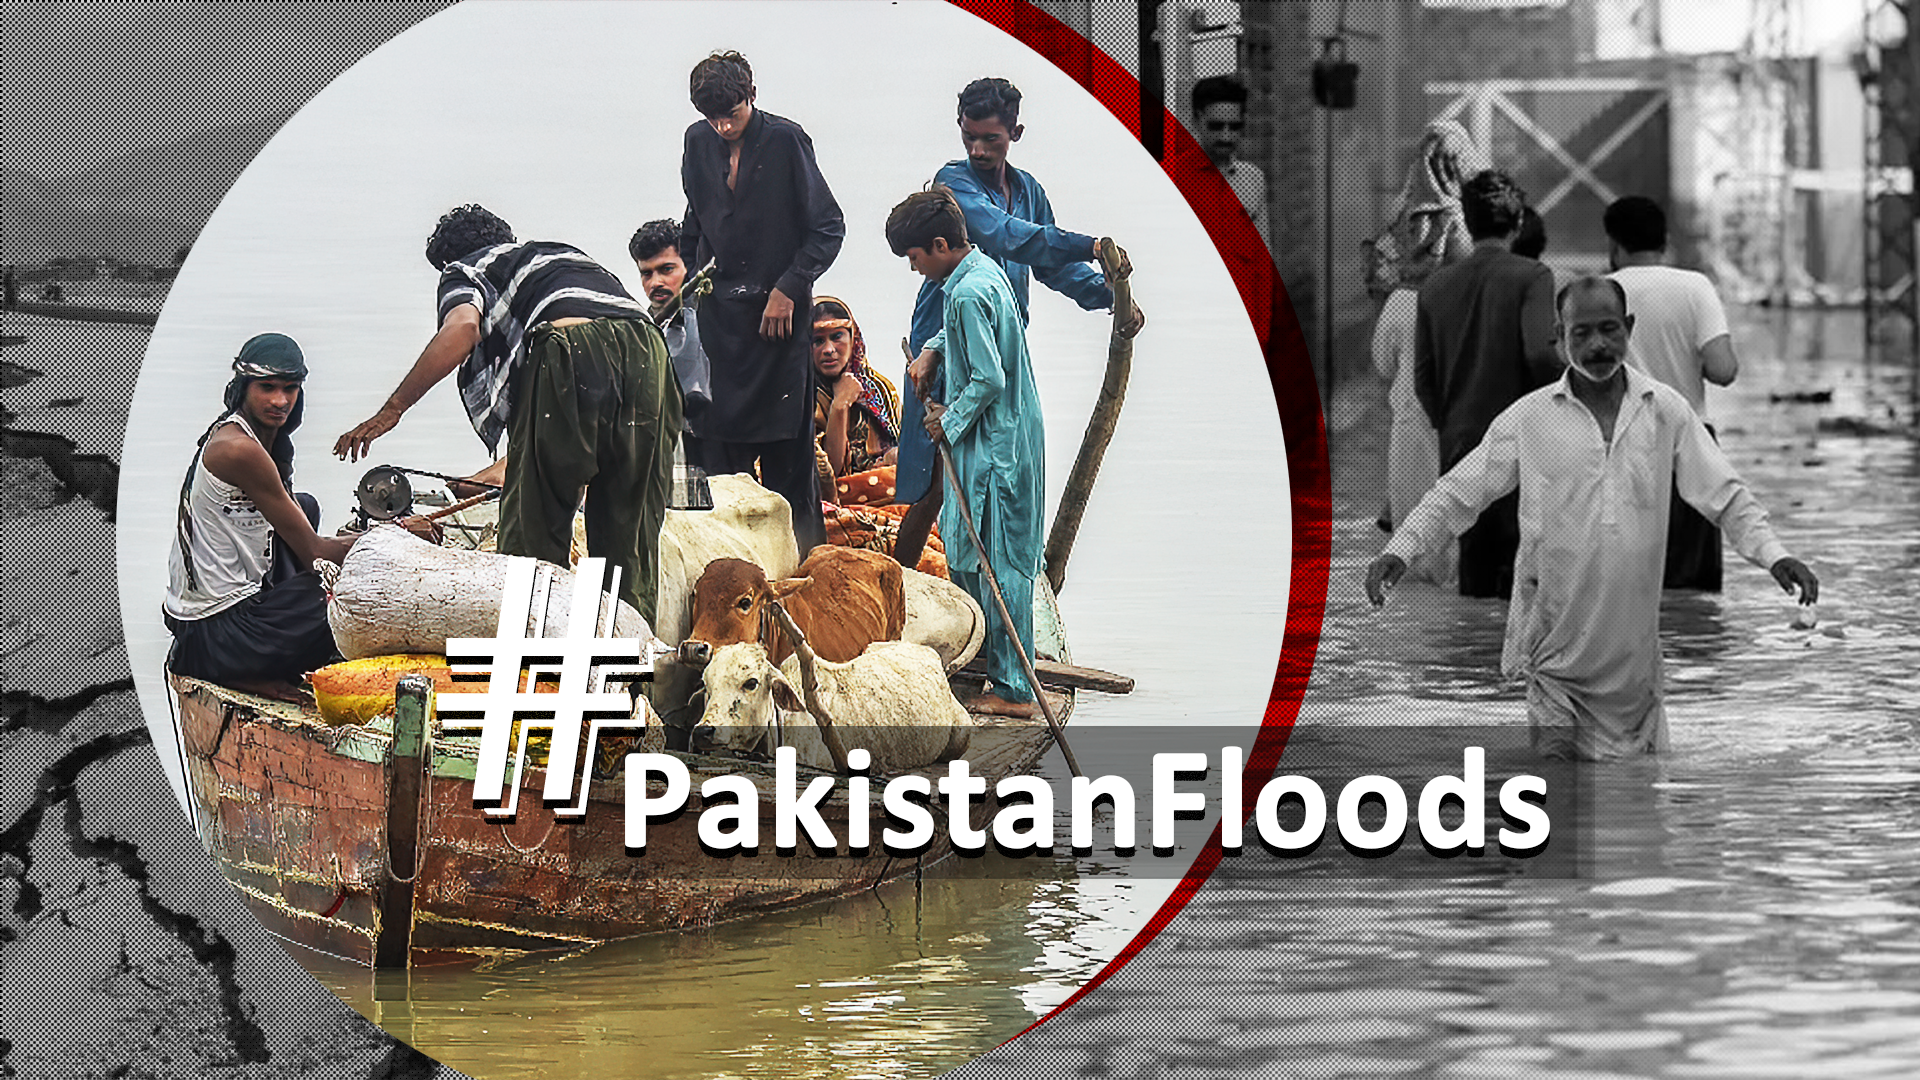 #Pakistanfloods